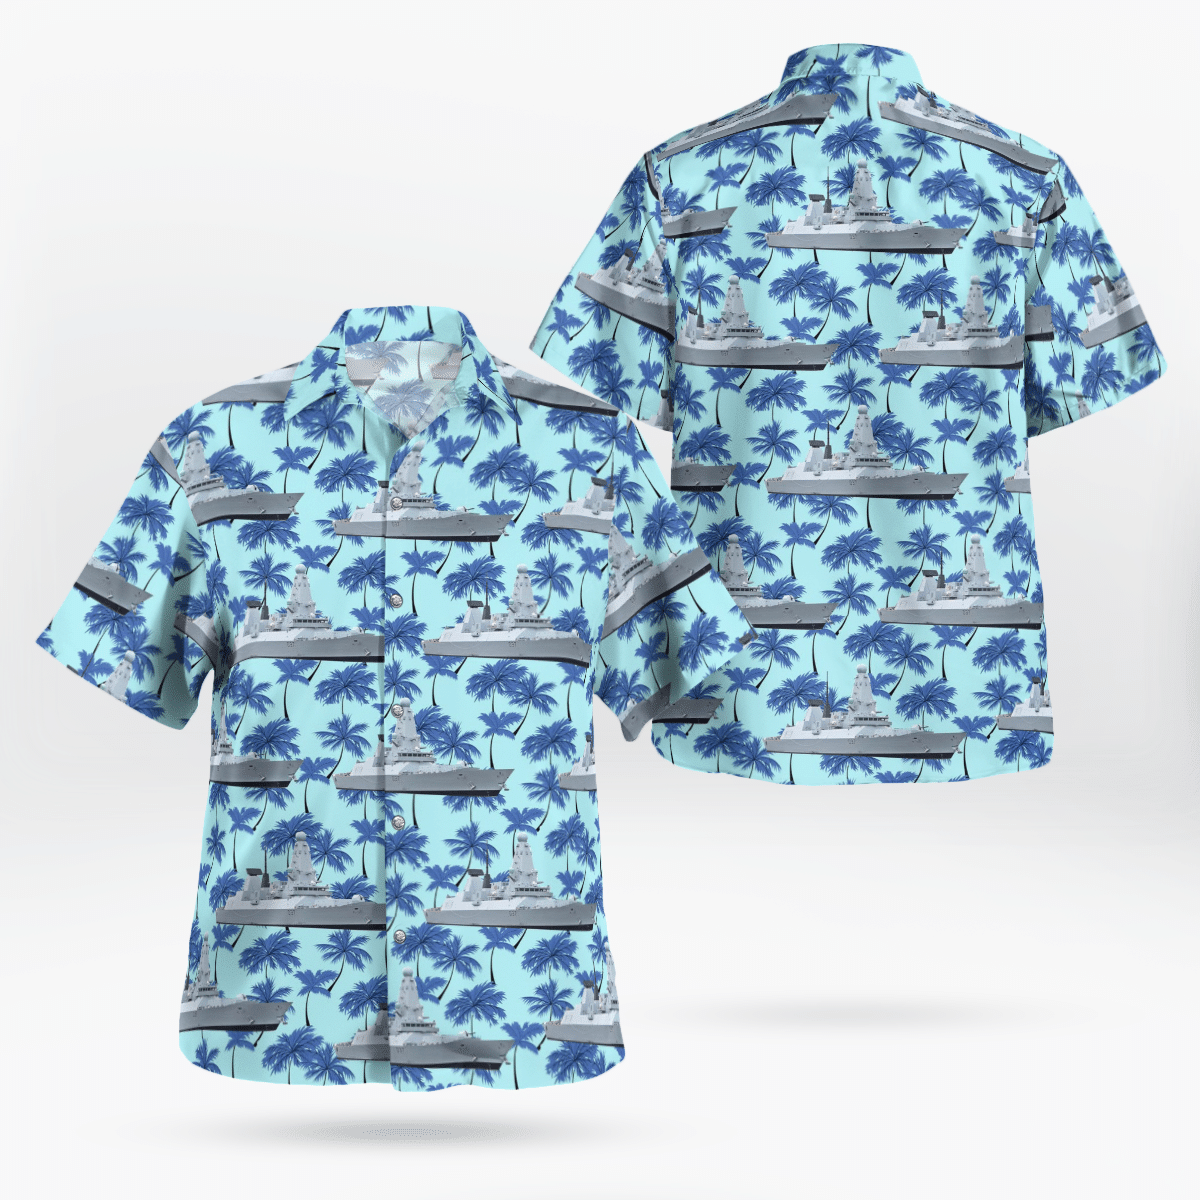 Best Hawaiian shirts 2022 320